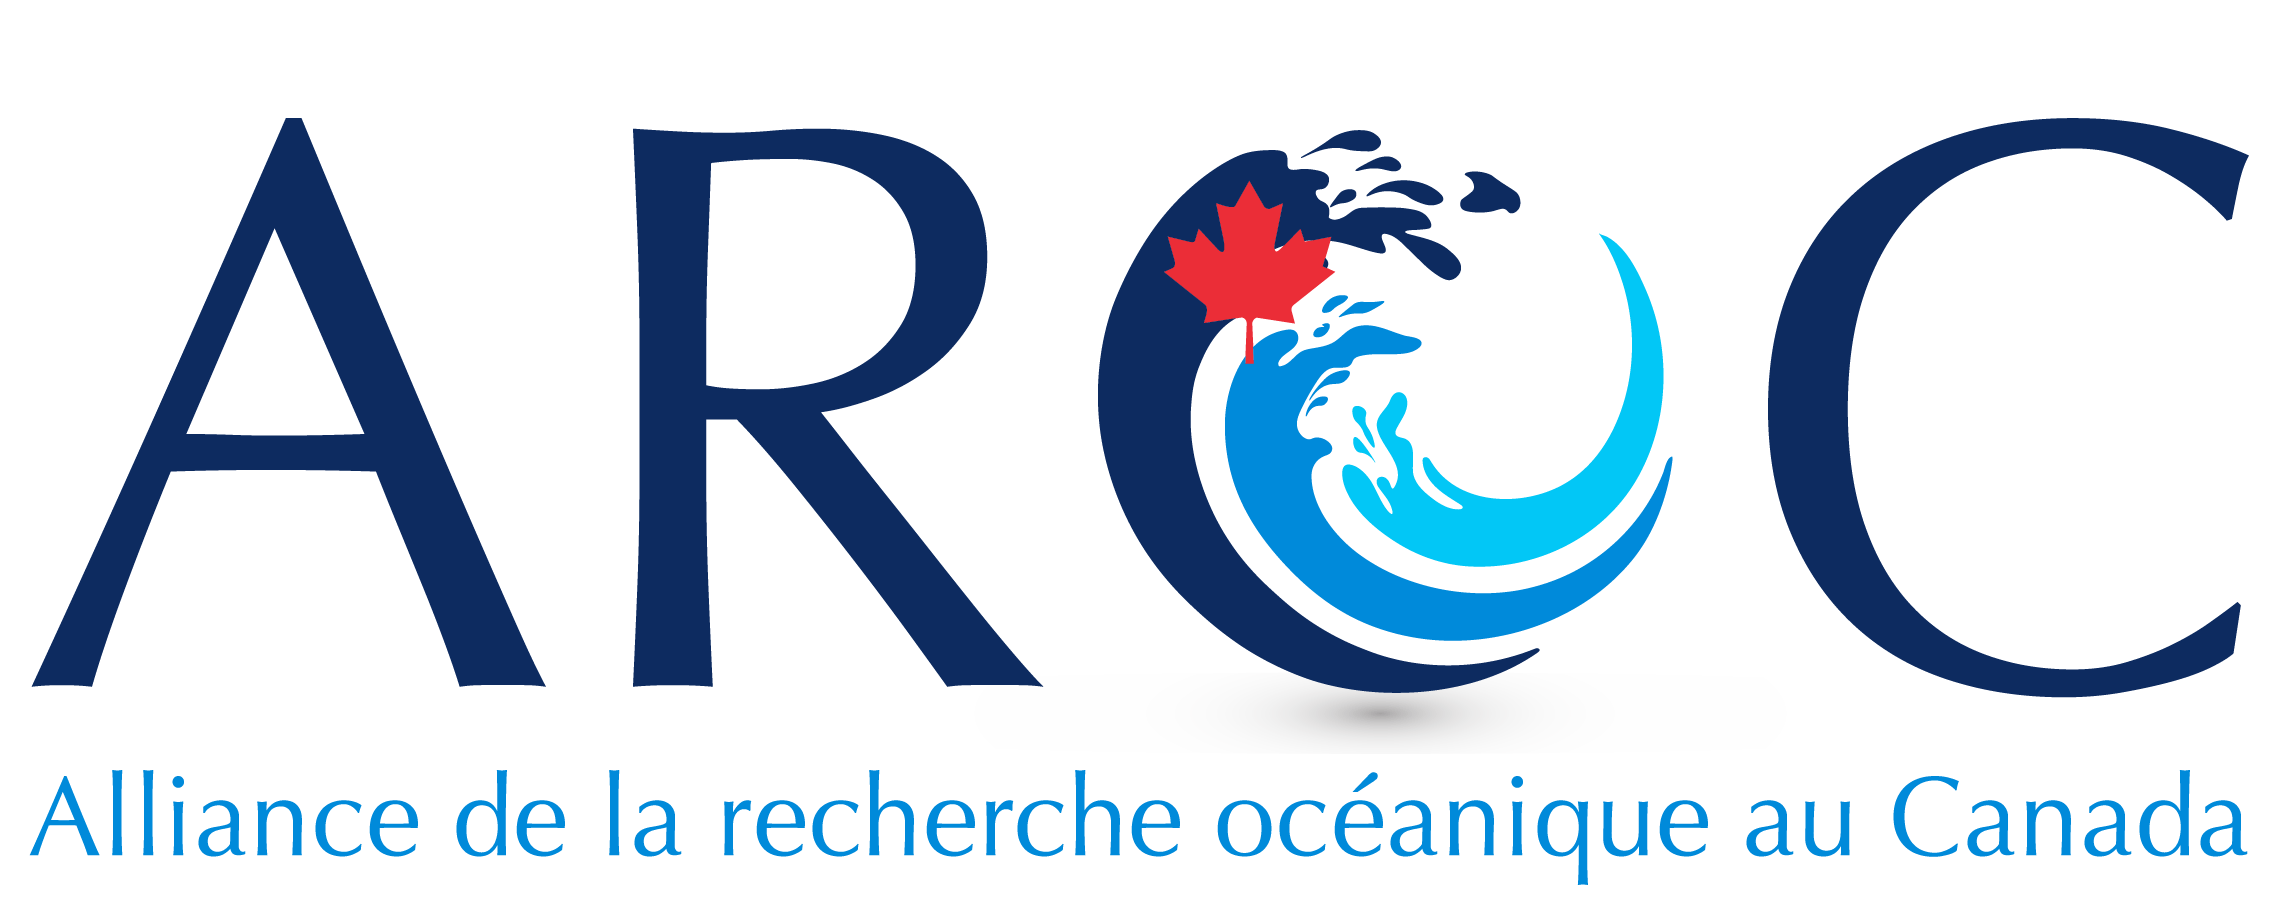 Logo de l'AROC avec une vague stylisée sur trois tons de bleu et la feuille d’érable rouge du Canada où l’on peut lire « Alliance de la recherche océanique au Canada ».